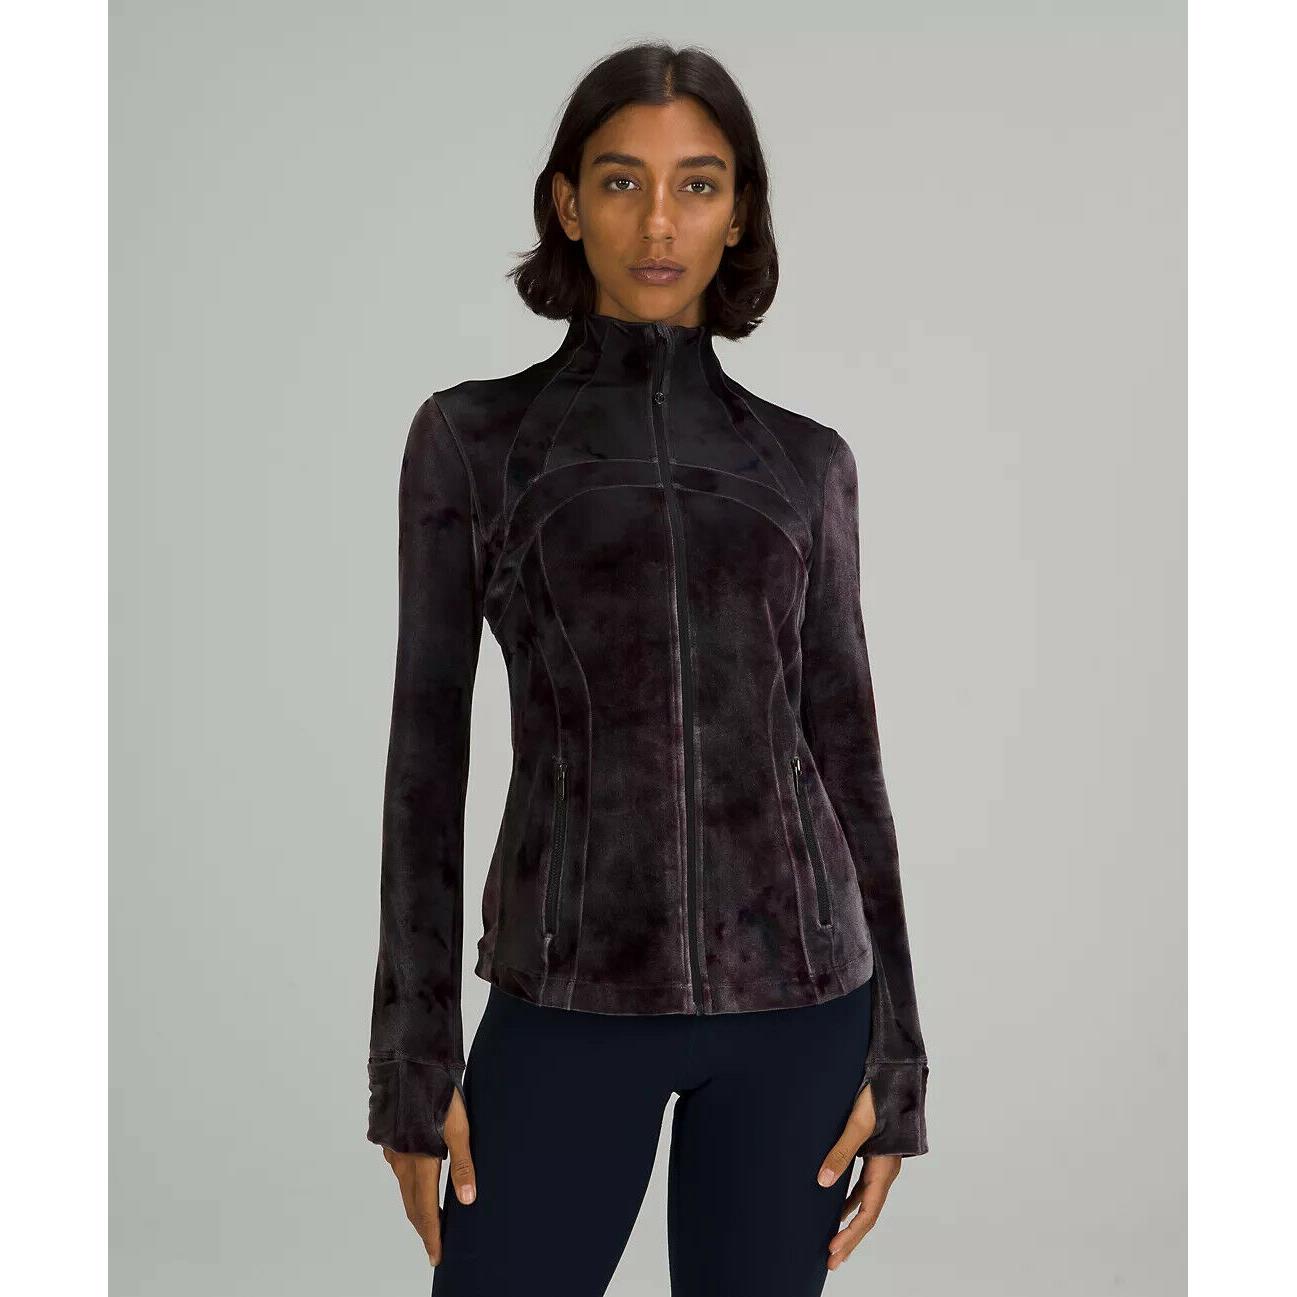 Lululemon Womens Define Jacket Velour Interstellar Dark Grey Size 14 Fitted